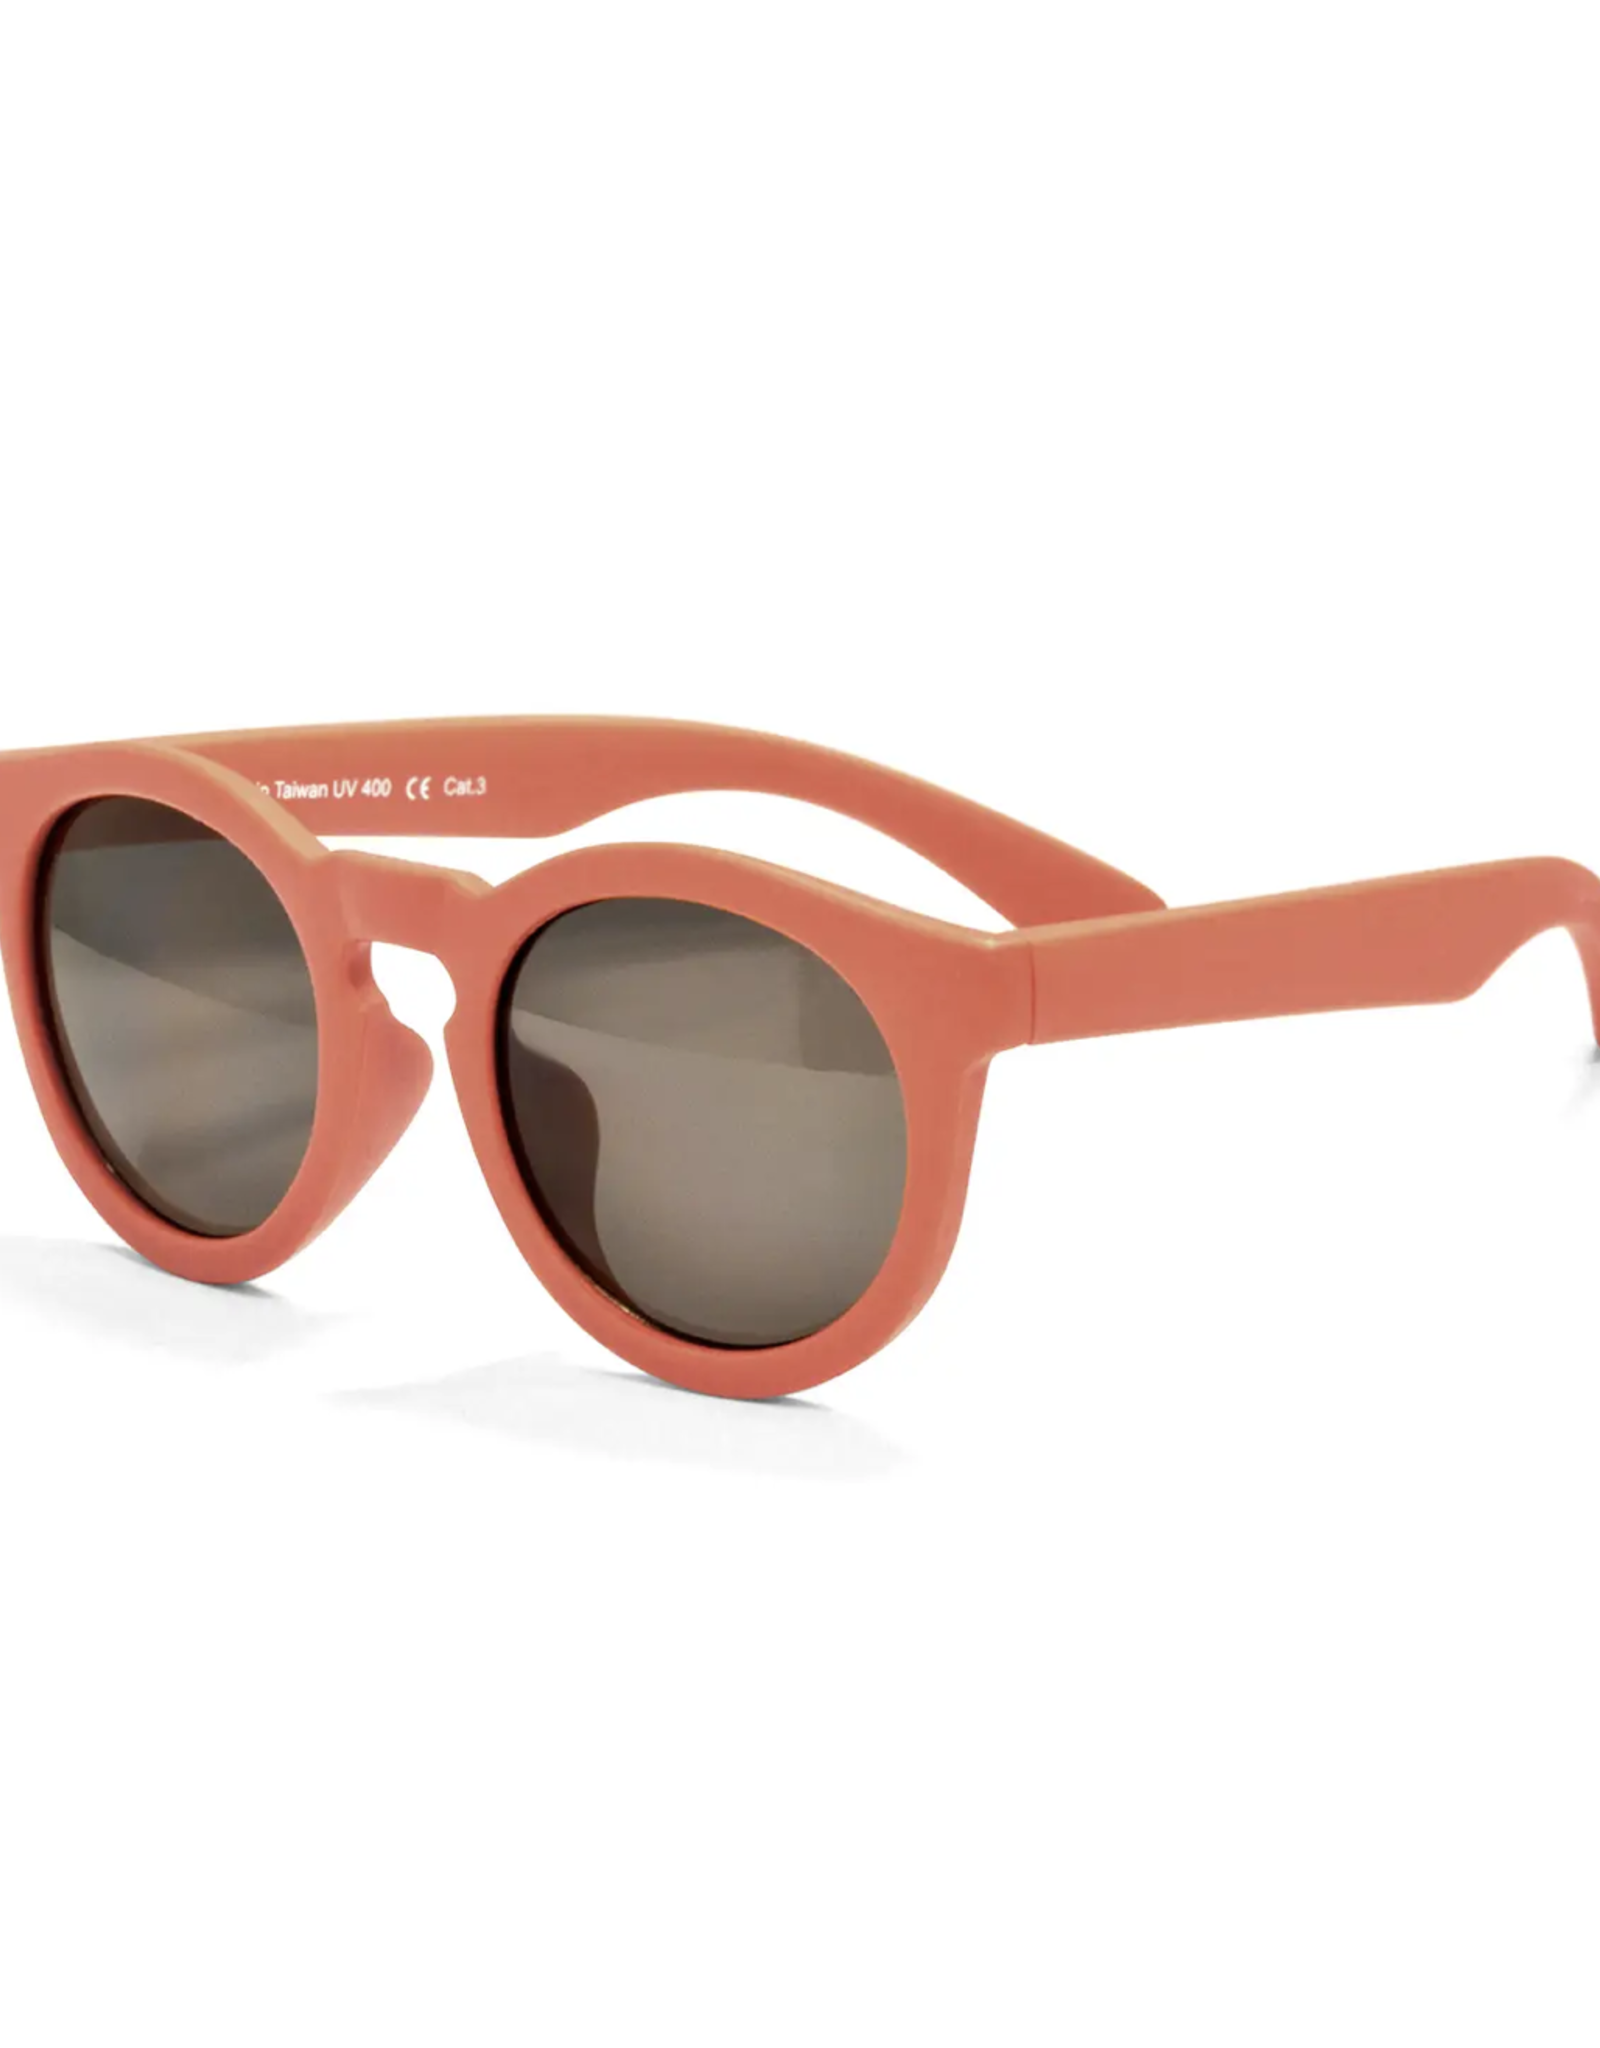 Chill Flexible Frame Sunglasses for Kids